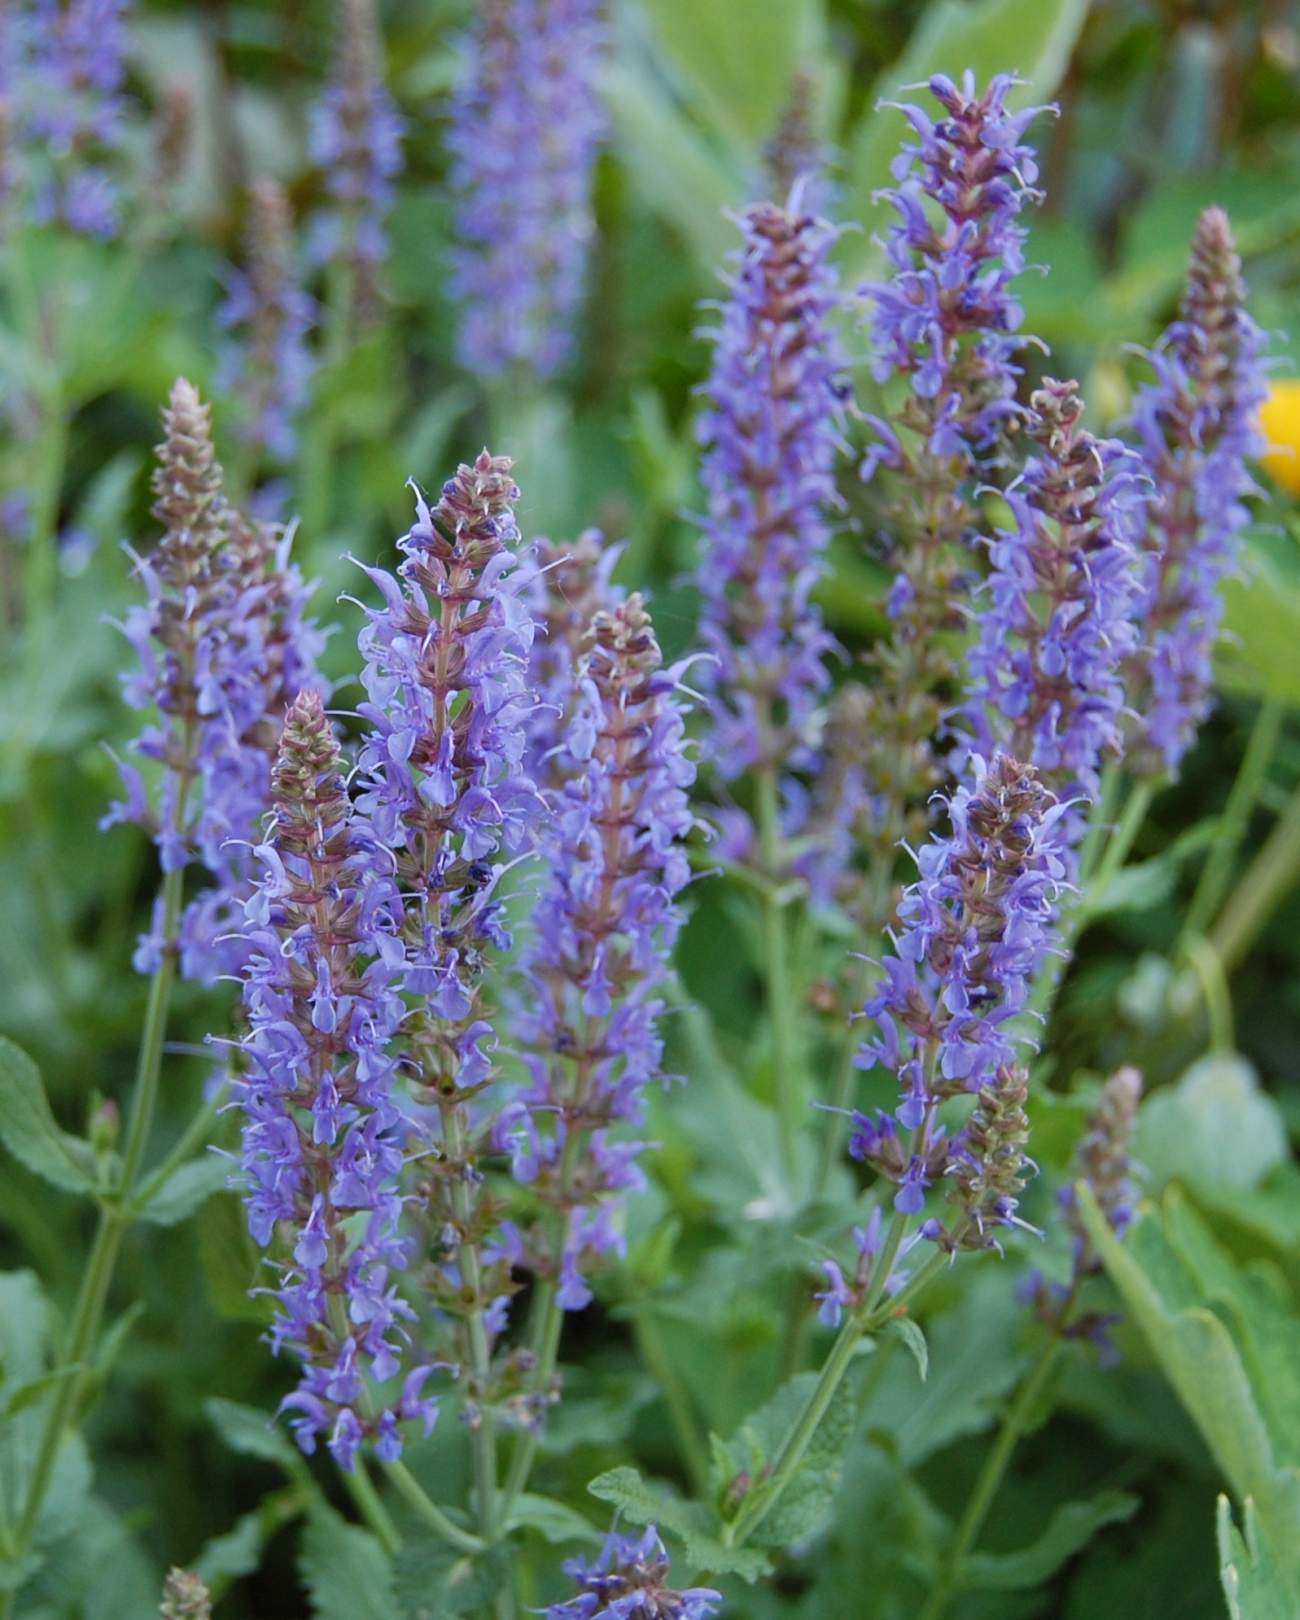 szałwia salute deep blue - wieloletnia bylina ogrodowa o niebieskich kwiatach